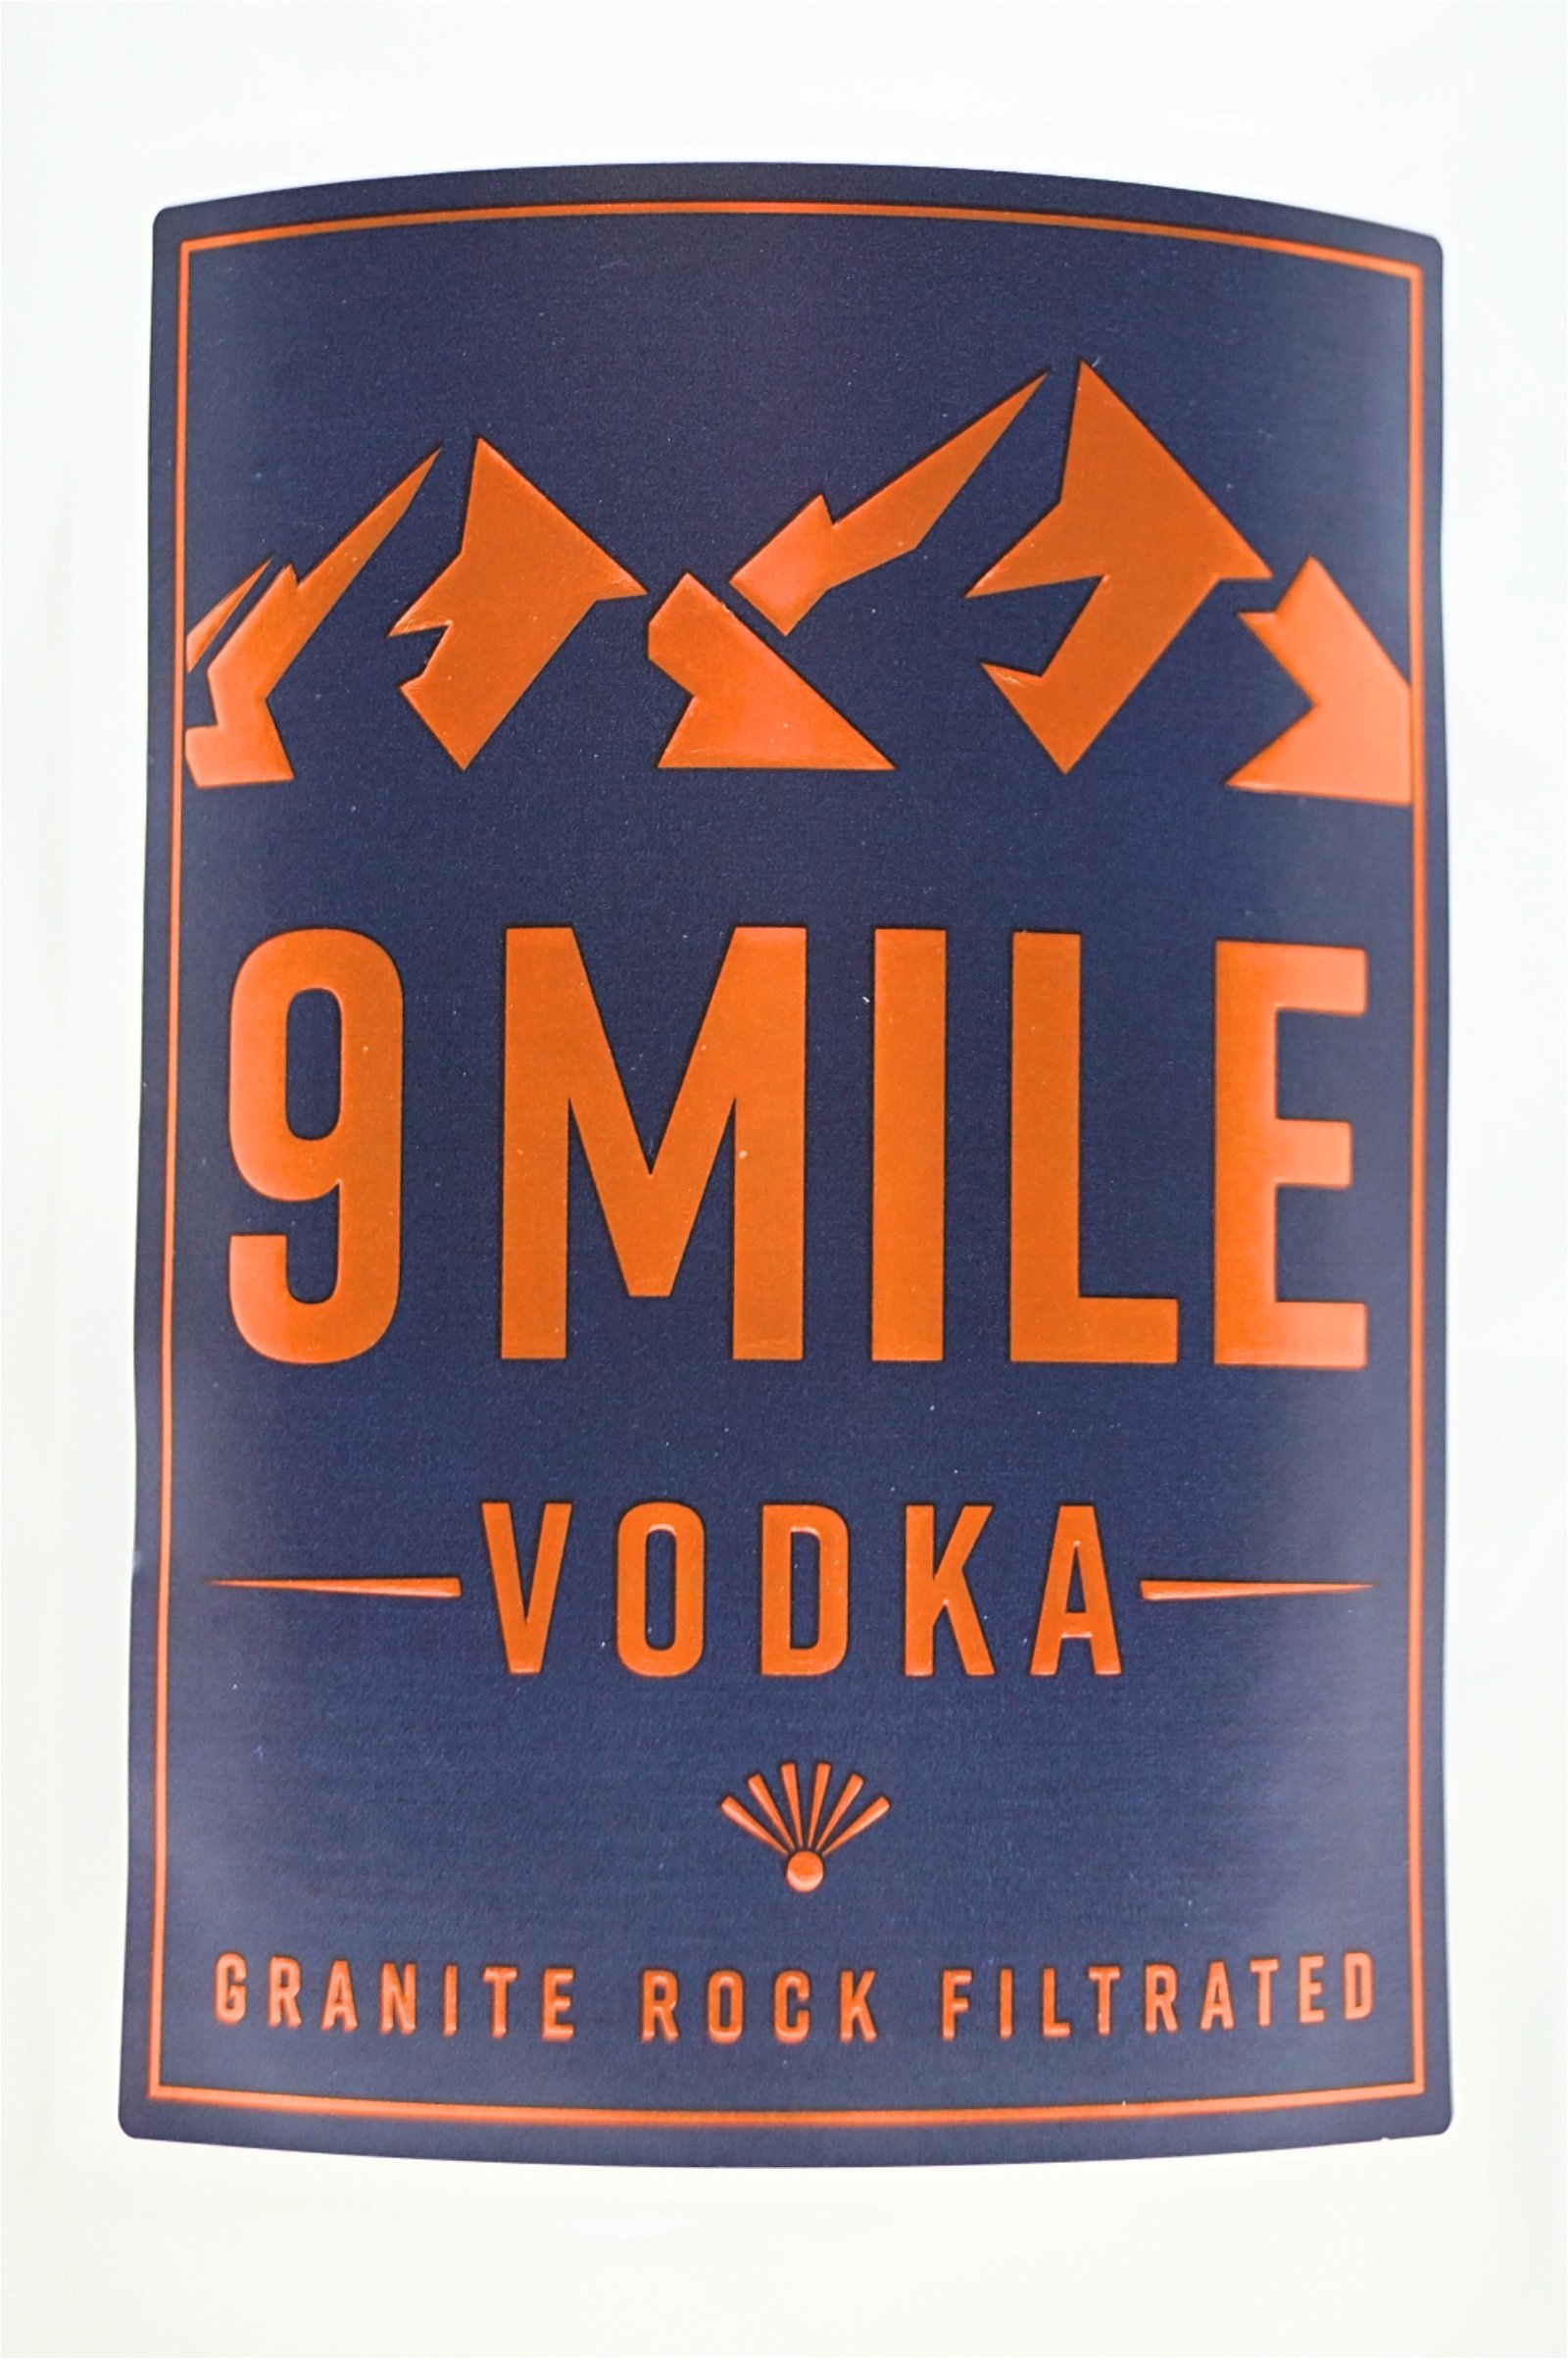 9 Mile Vodka 1 Liter